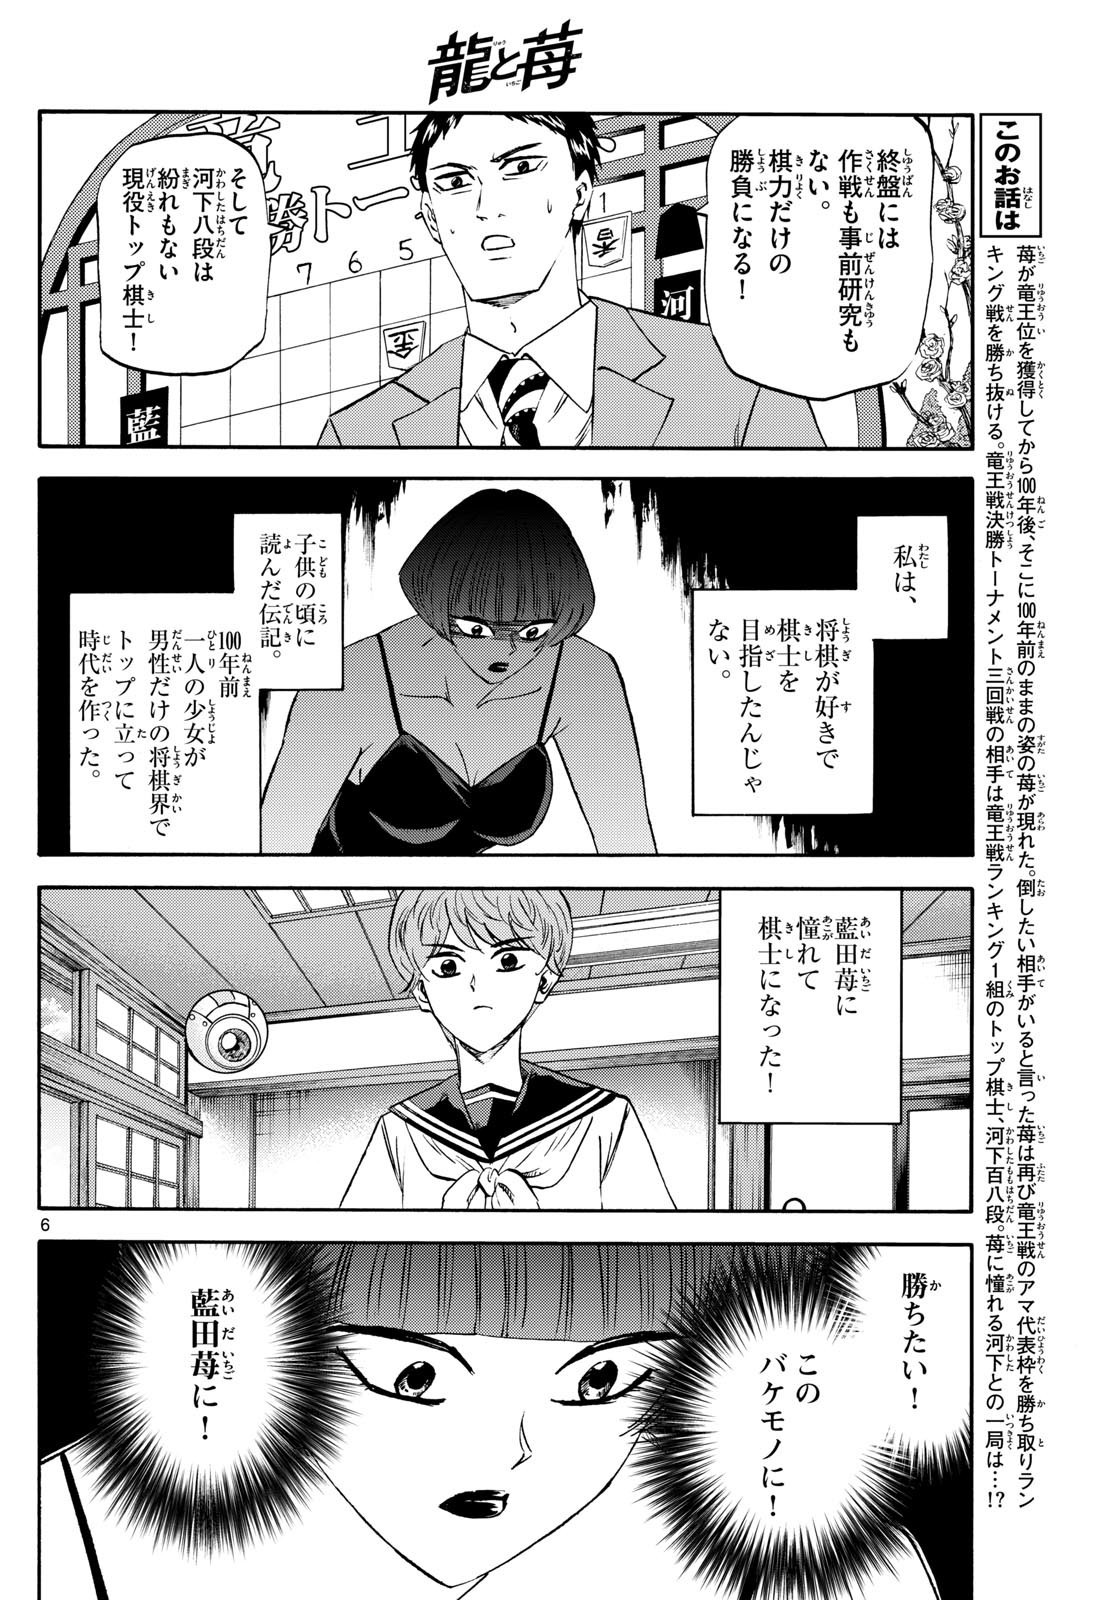 Ryu-to-Ichigo - Chapter 201 - Page 6